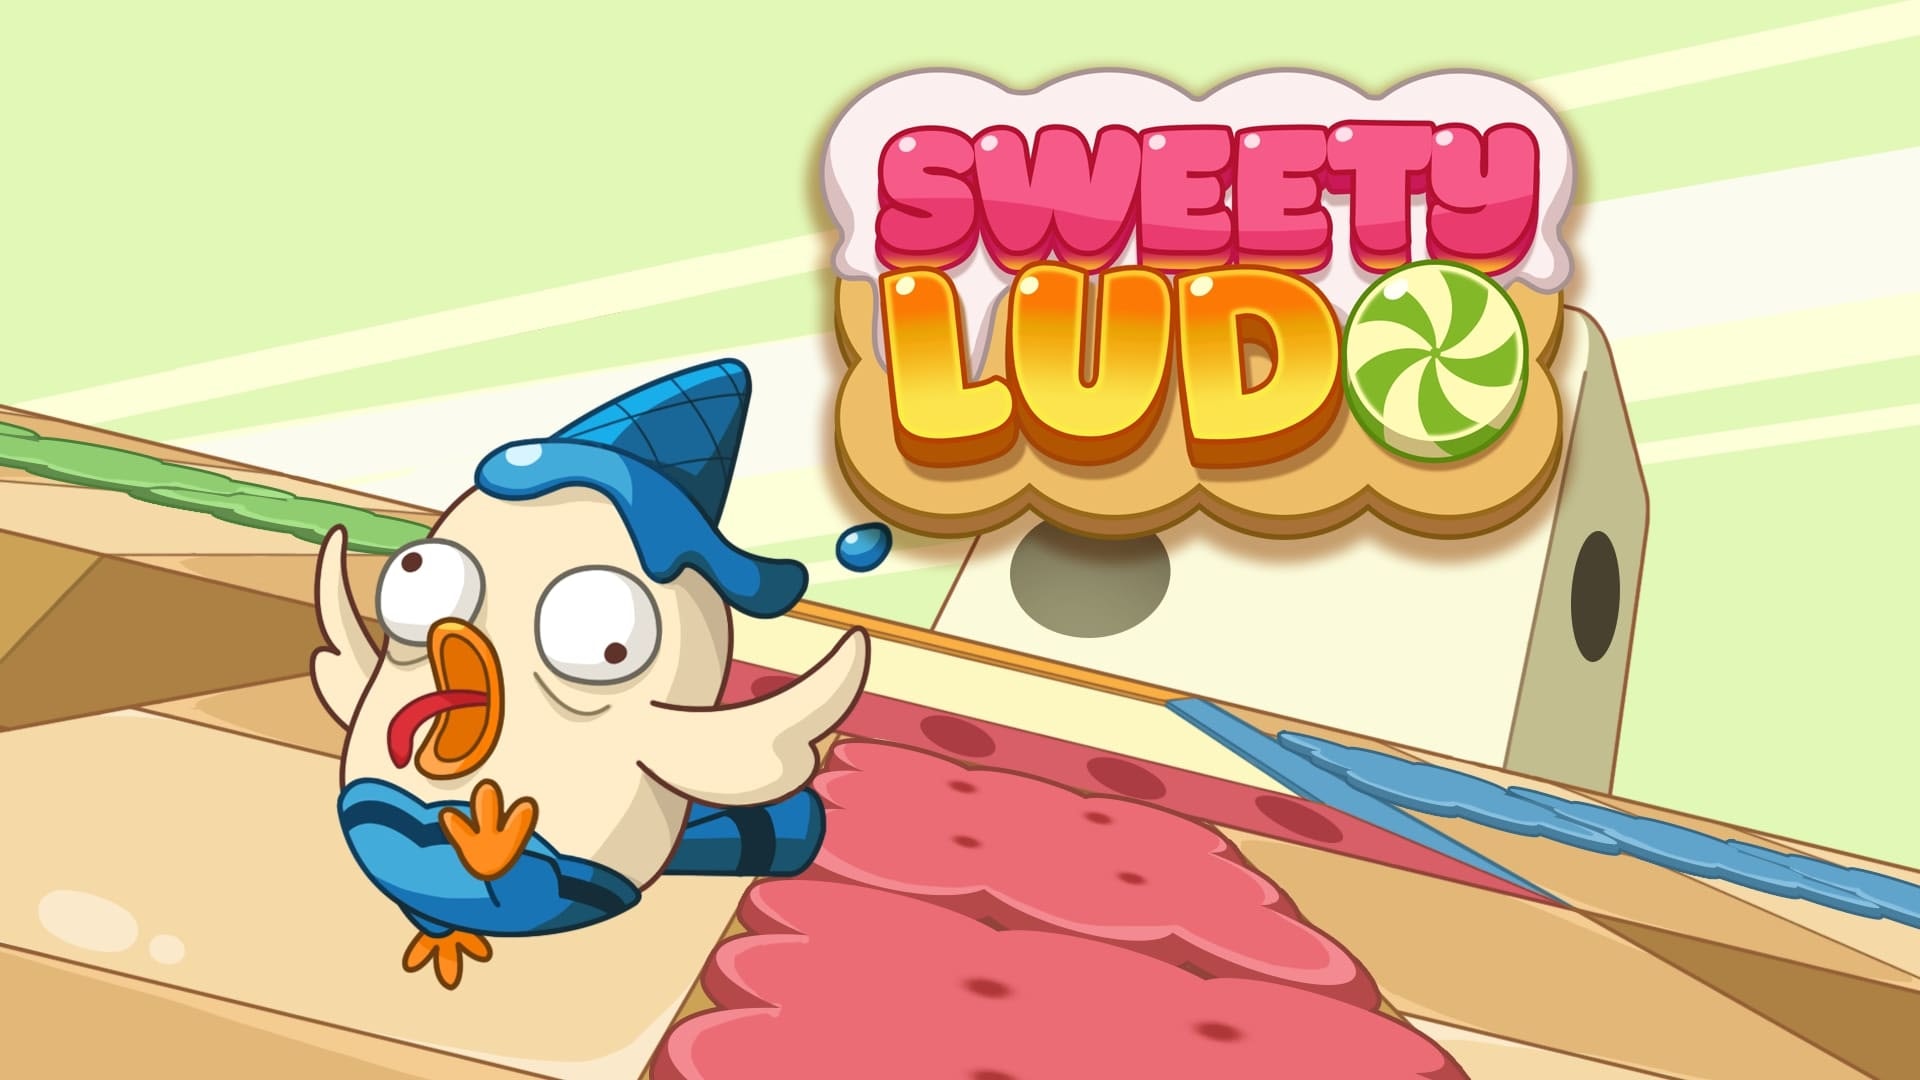 Sweety Ludo